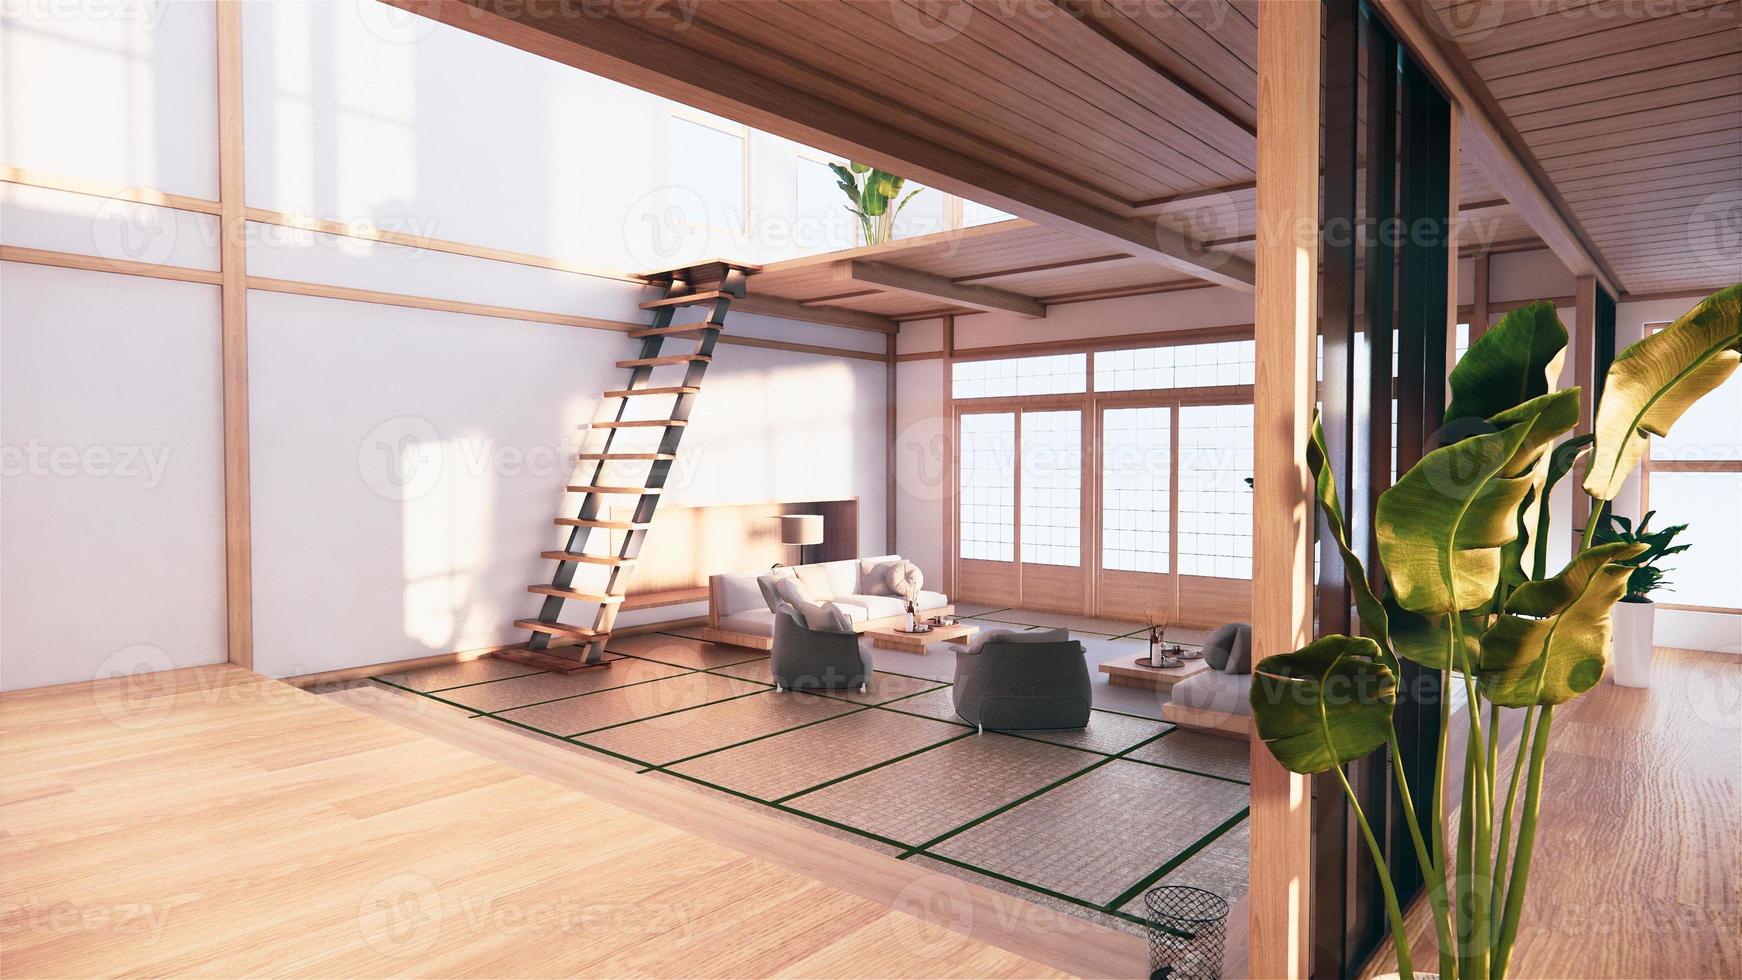 Interieur im japanischen Stil im ersten Stock eines zweistöckigen Hauses. 3D-Rendering foto